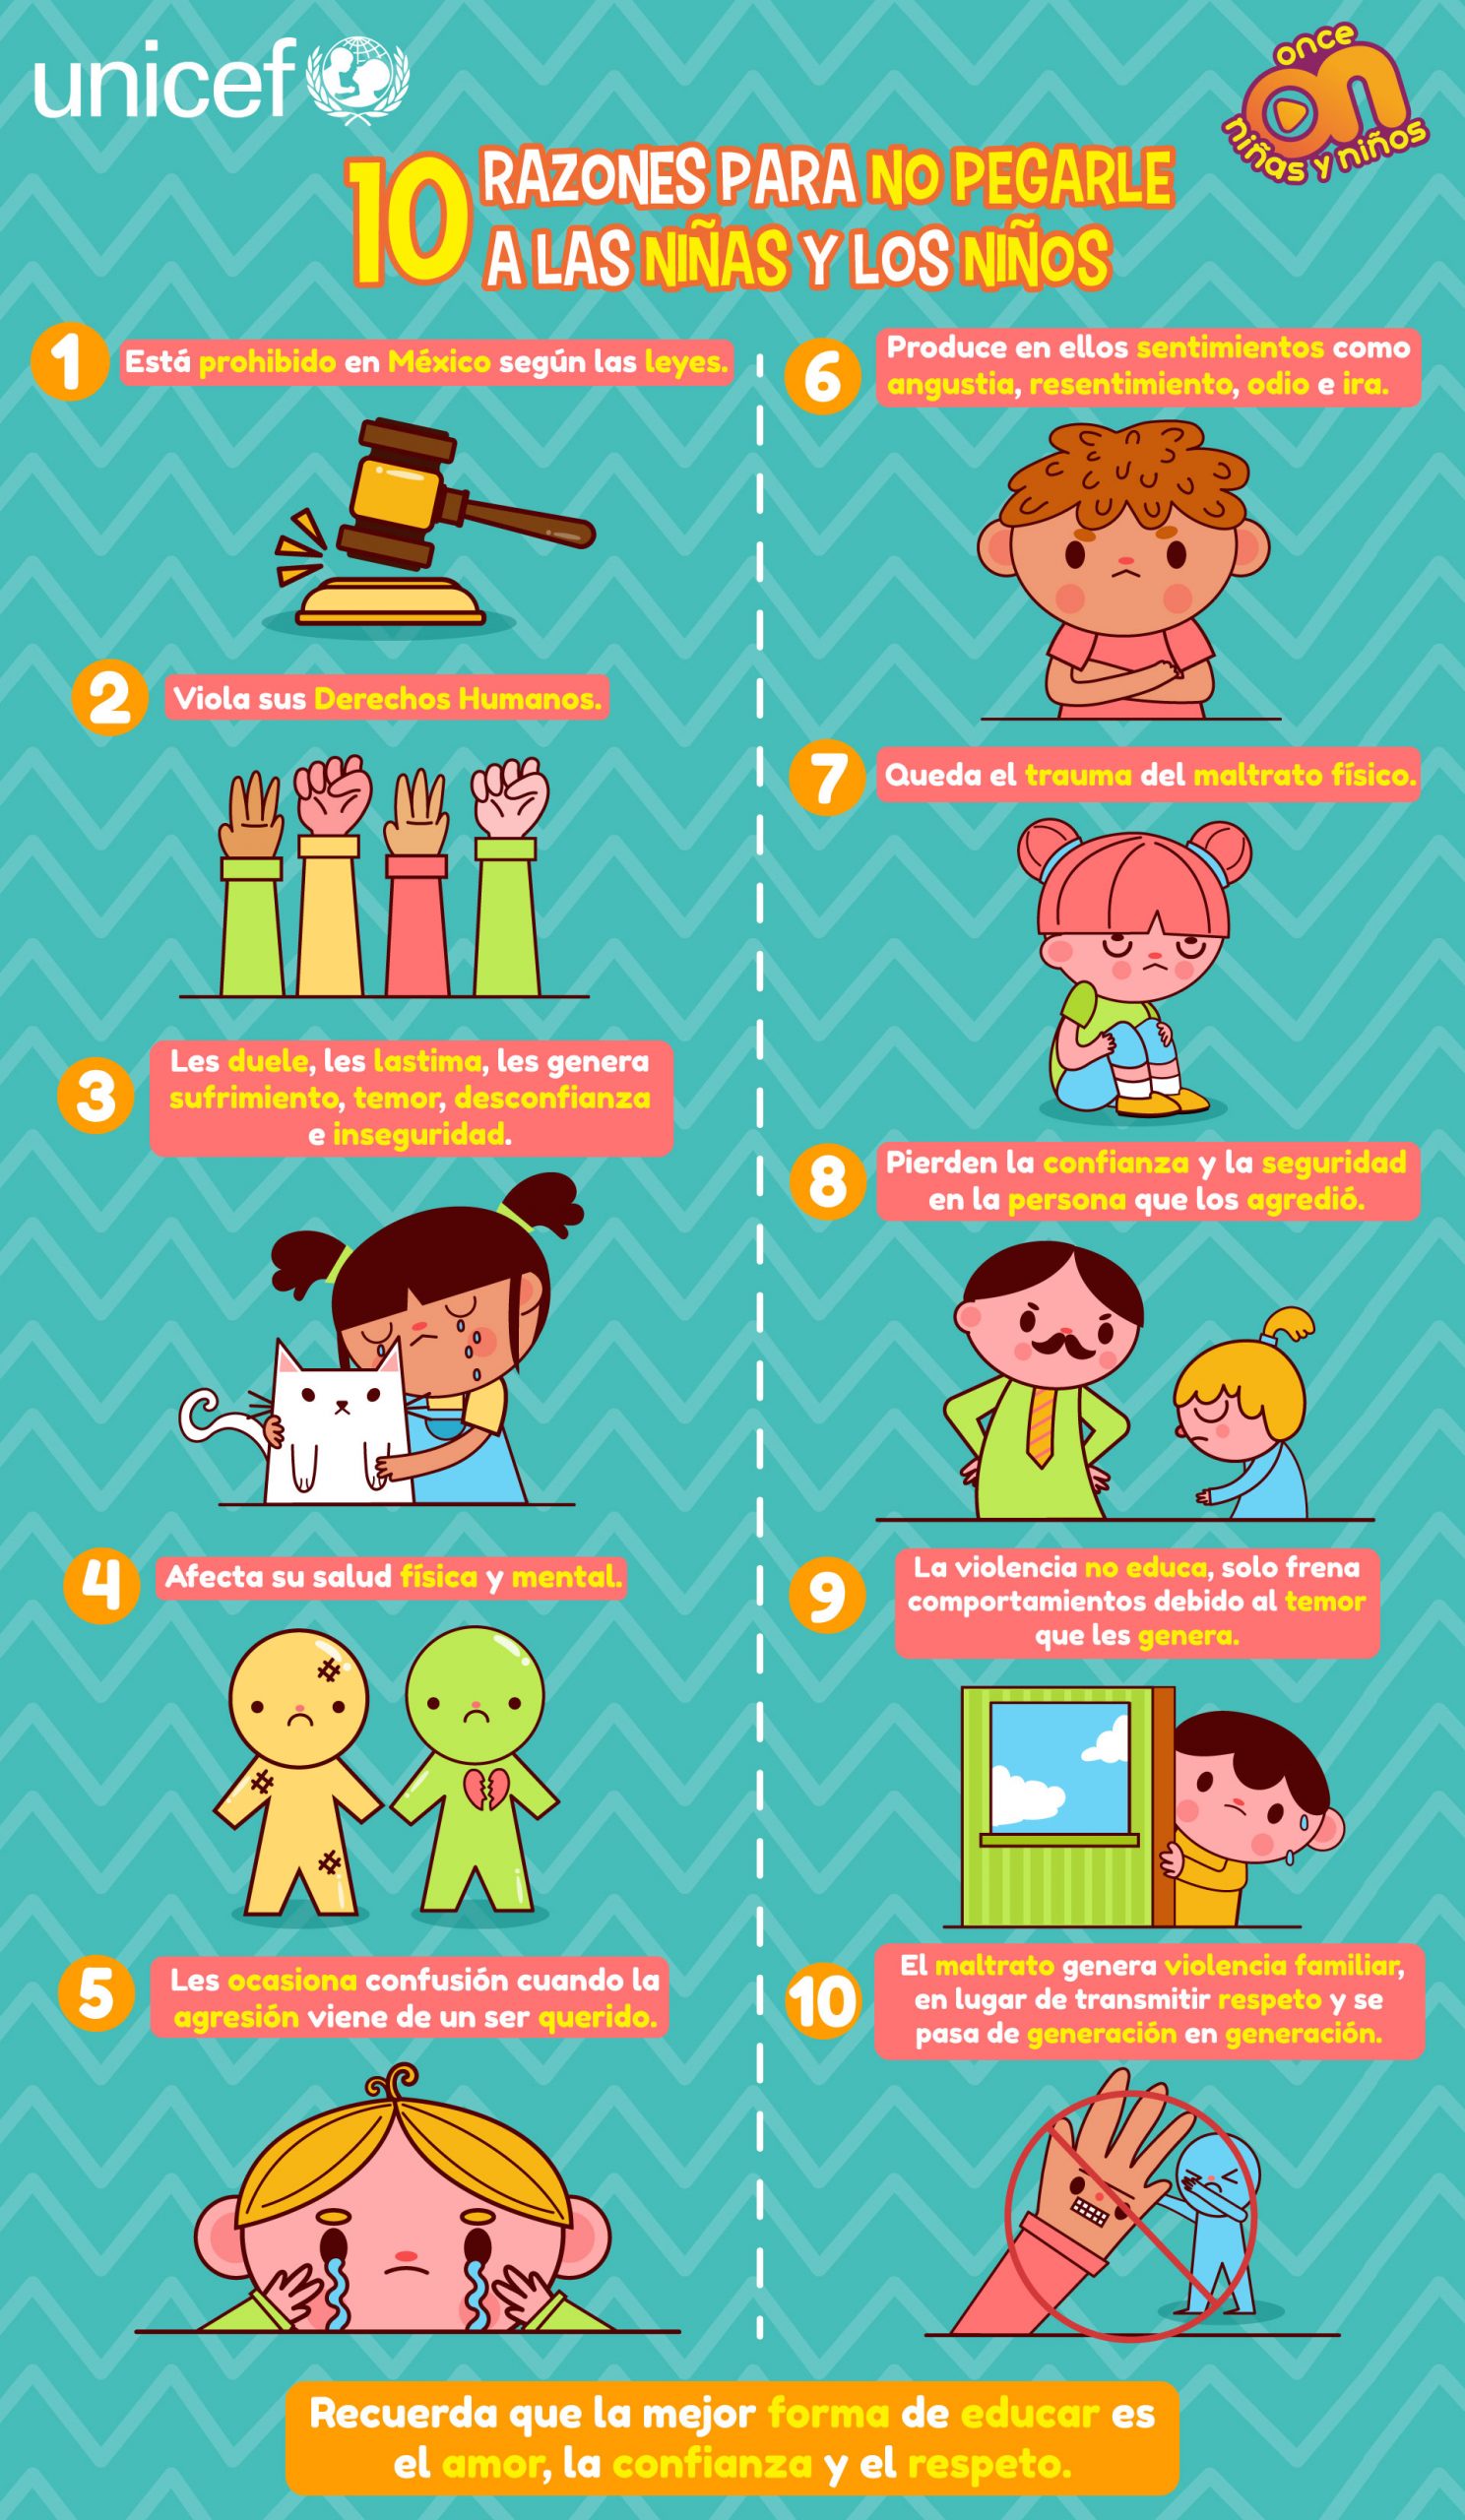 Diez razones para no pegarle a niñas y niños. 
UNICEF y Once Niñas y Niños 